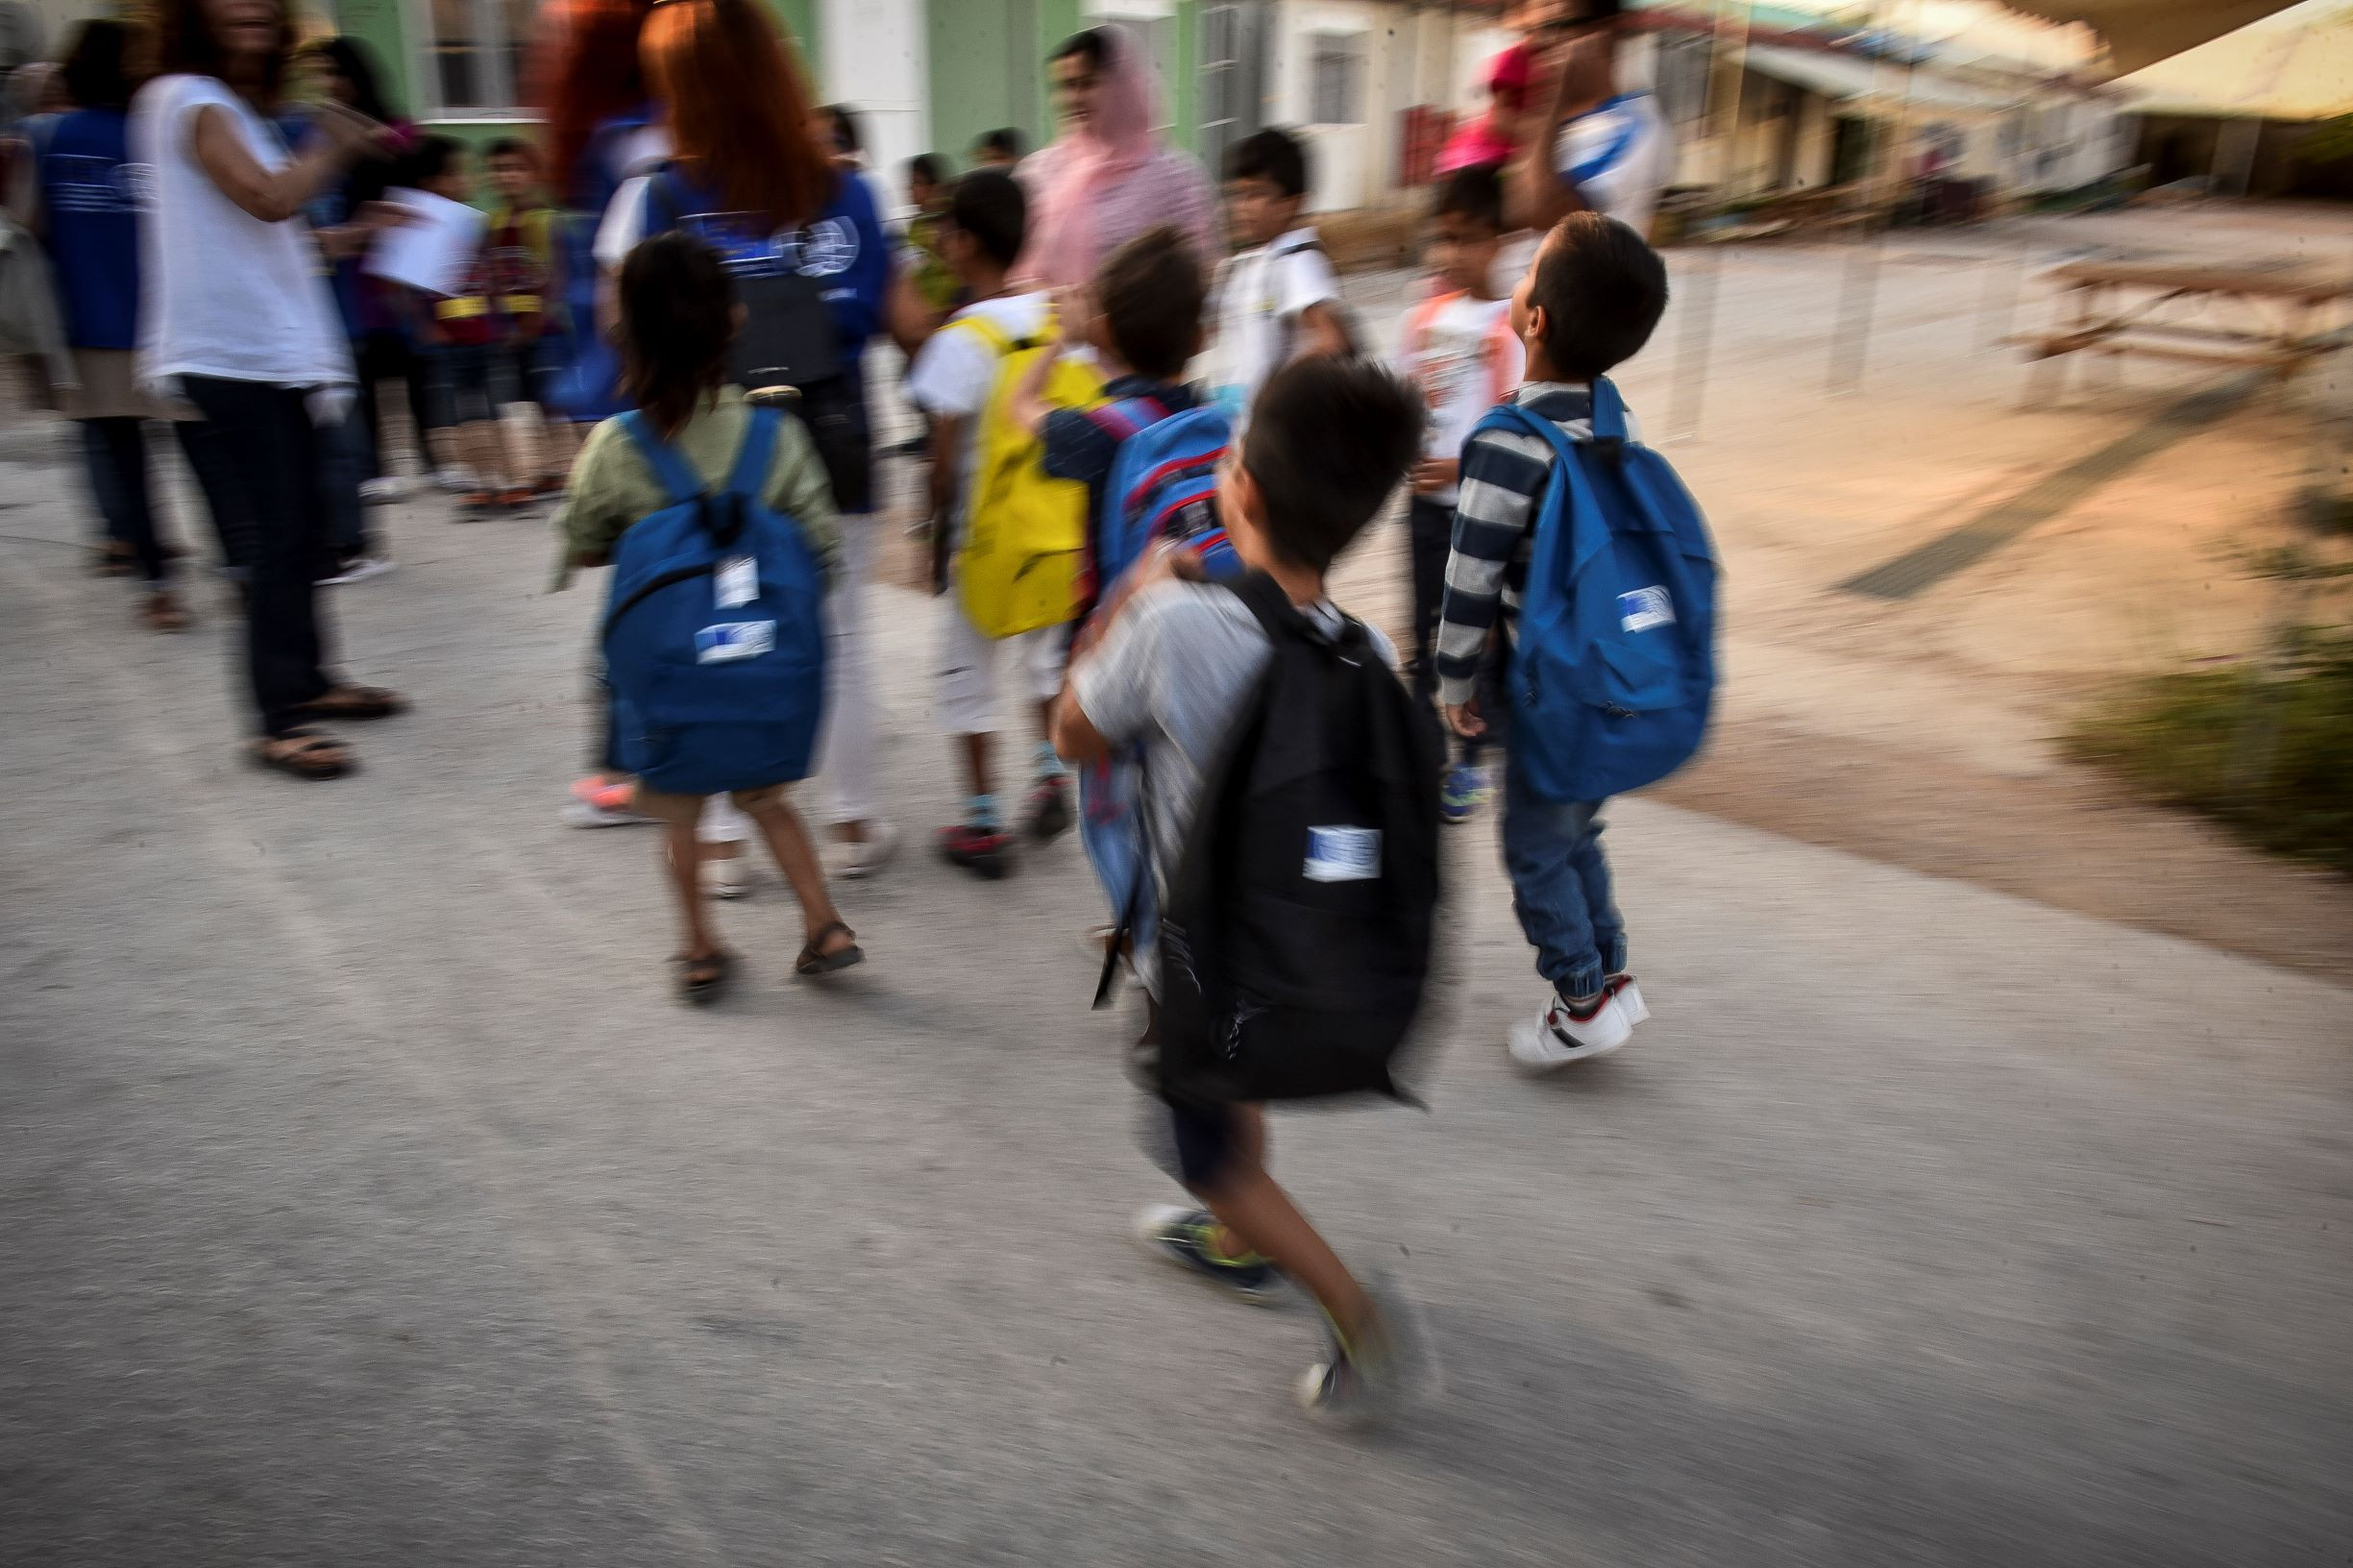 Θα επιτρέψει η κυβέρνηση να μην ενταχτούν προσφυγόπουλα στα σχολεία;